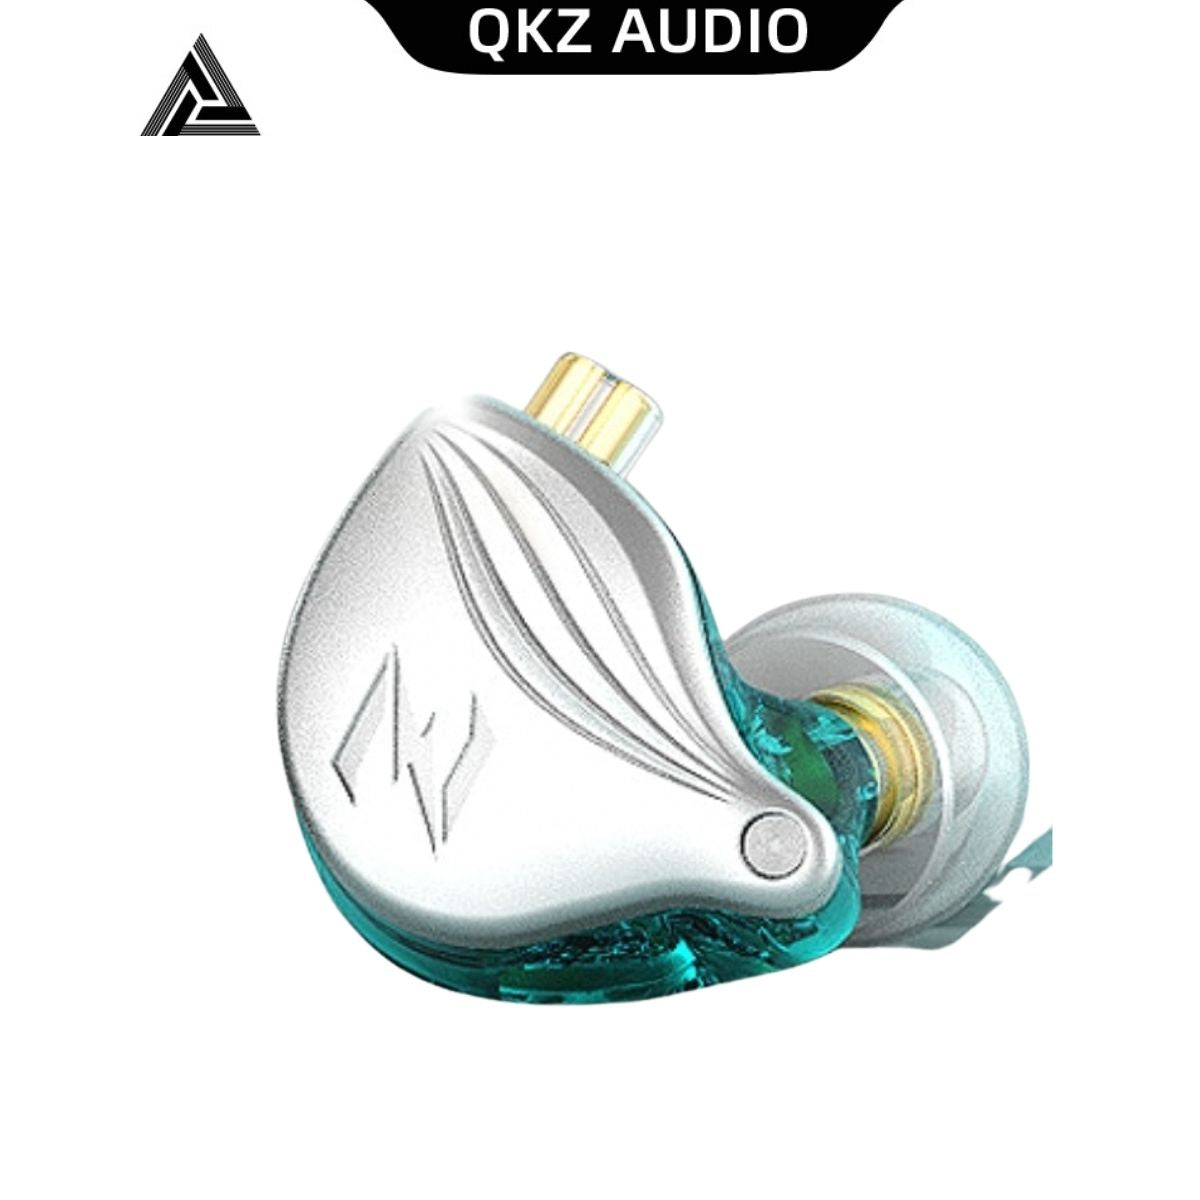 QKZ- Audífonos ZAX2